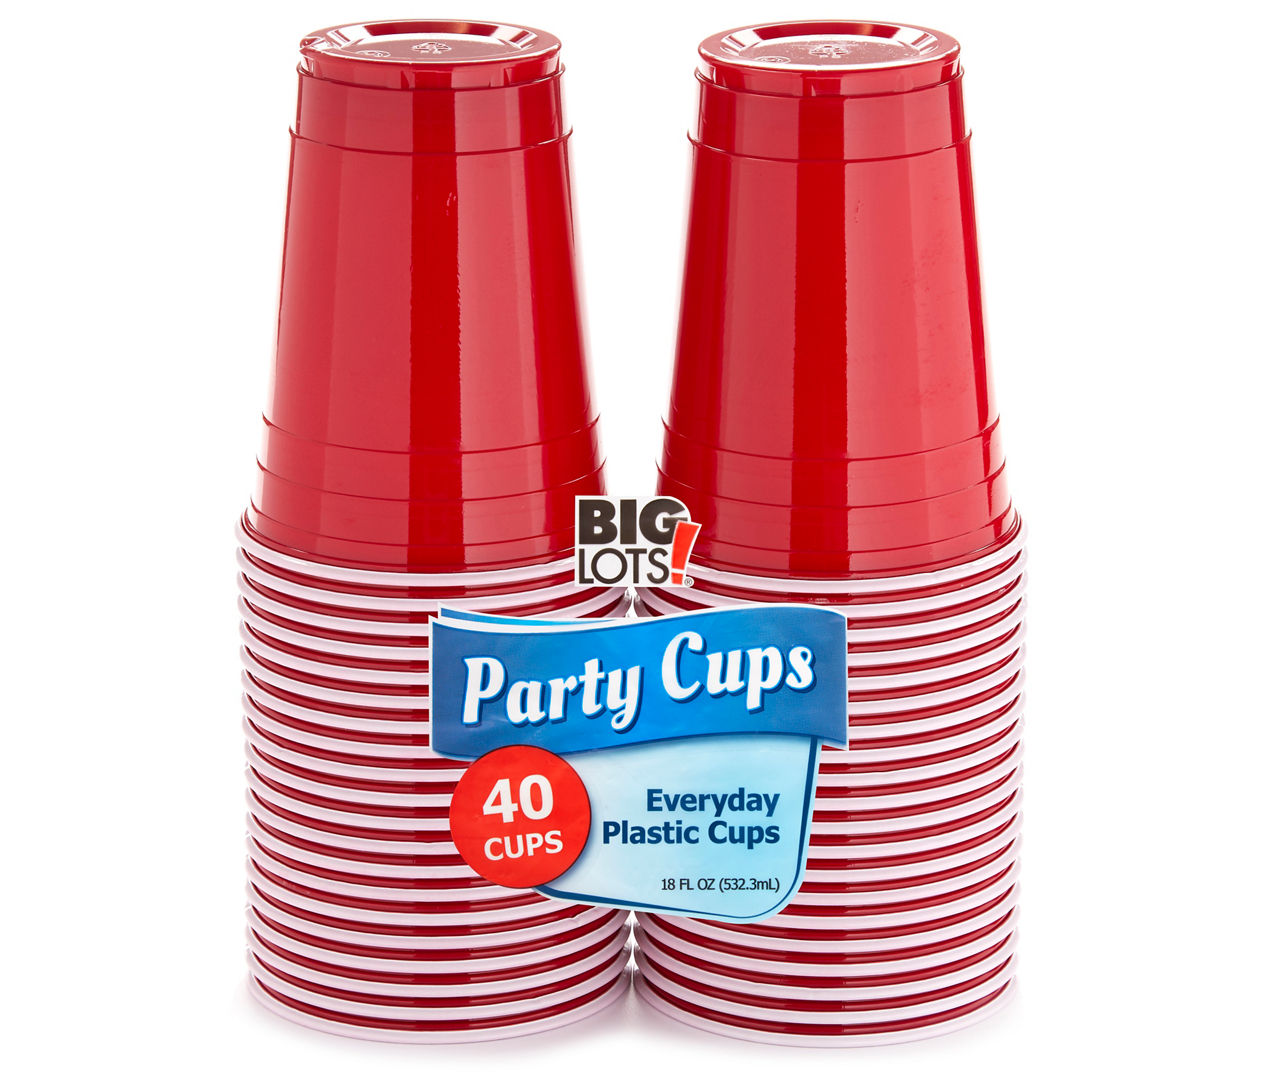 Big Lots Clear 9 Oz. Plastic Cups, 80-Count